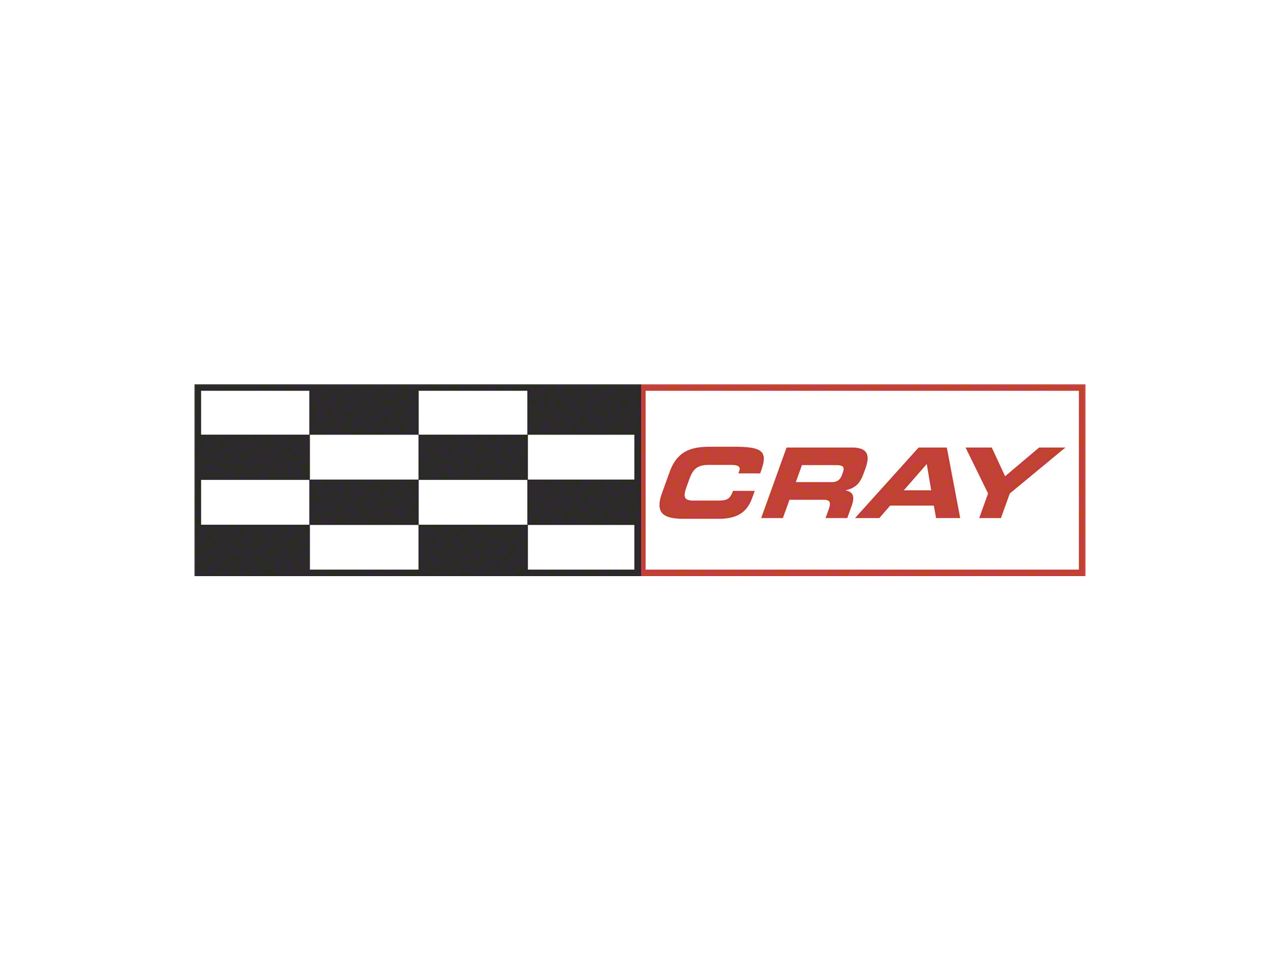 Cray Parts